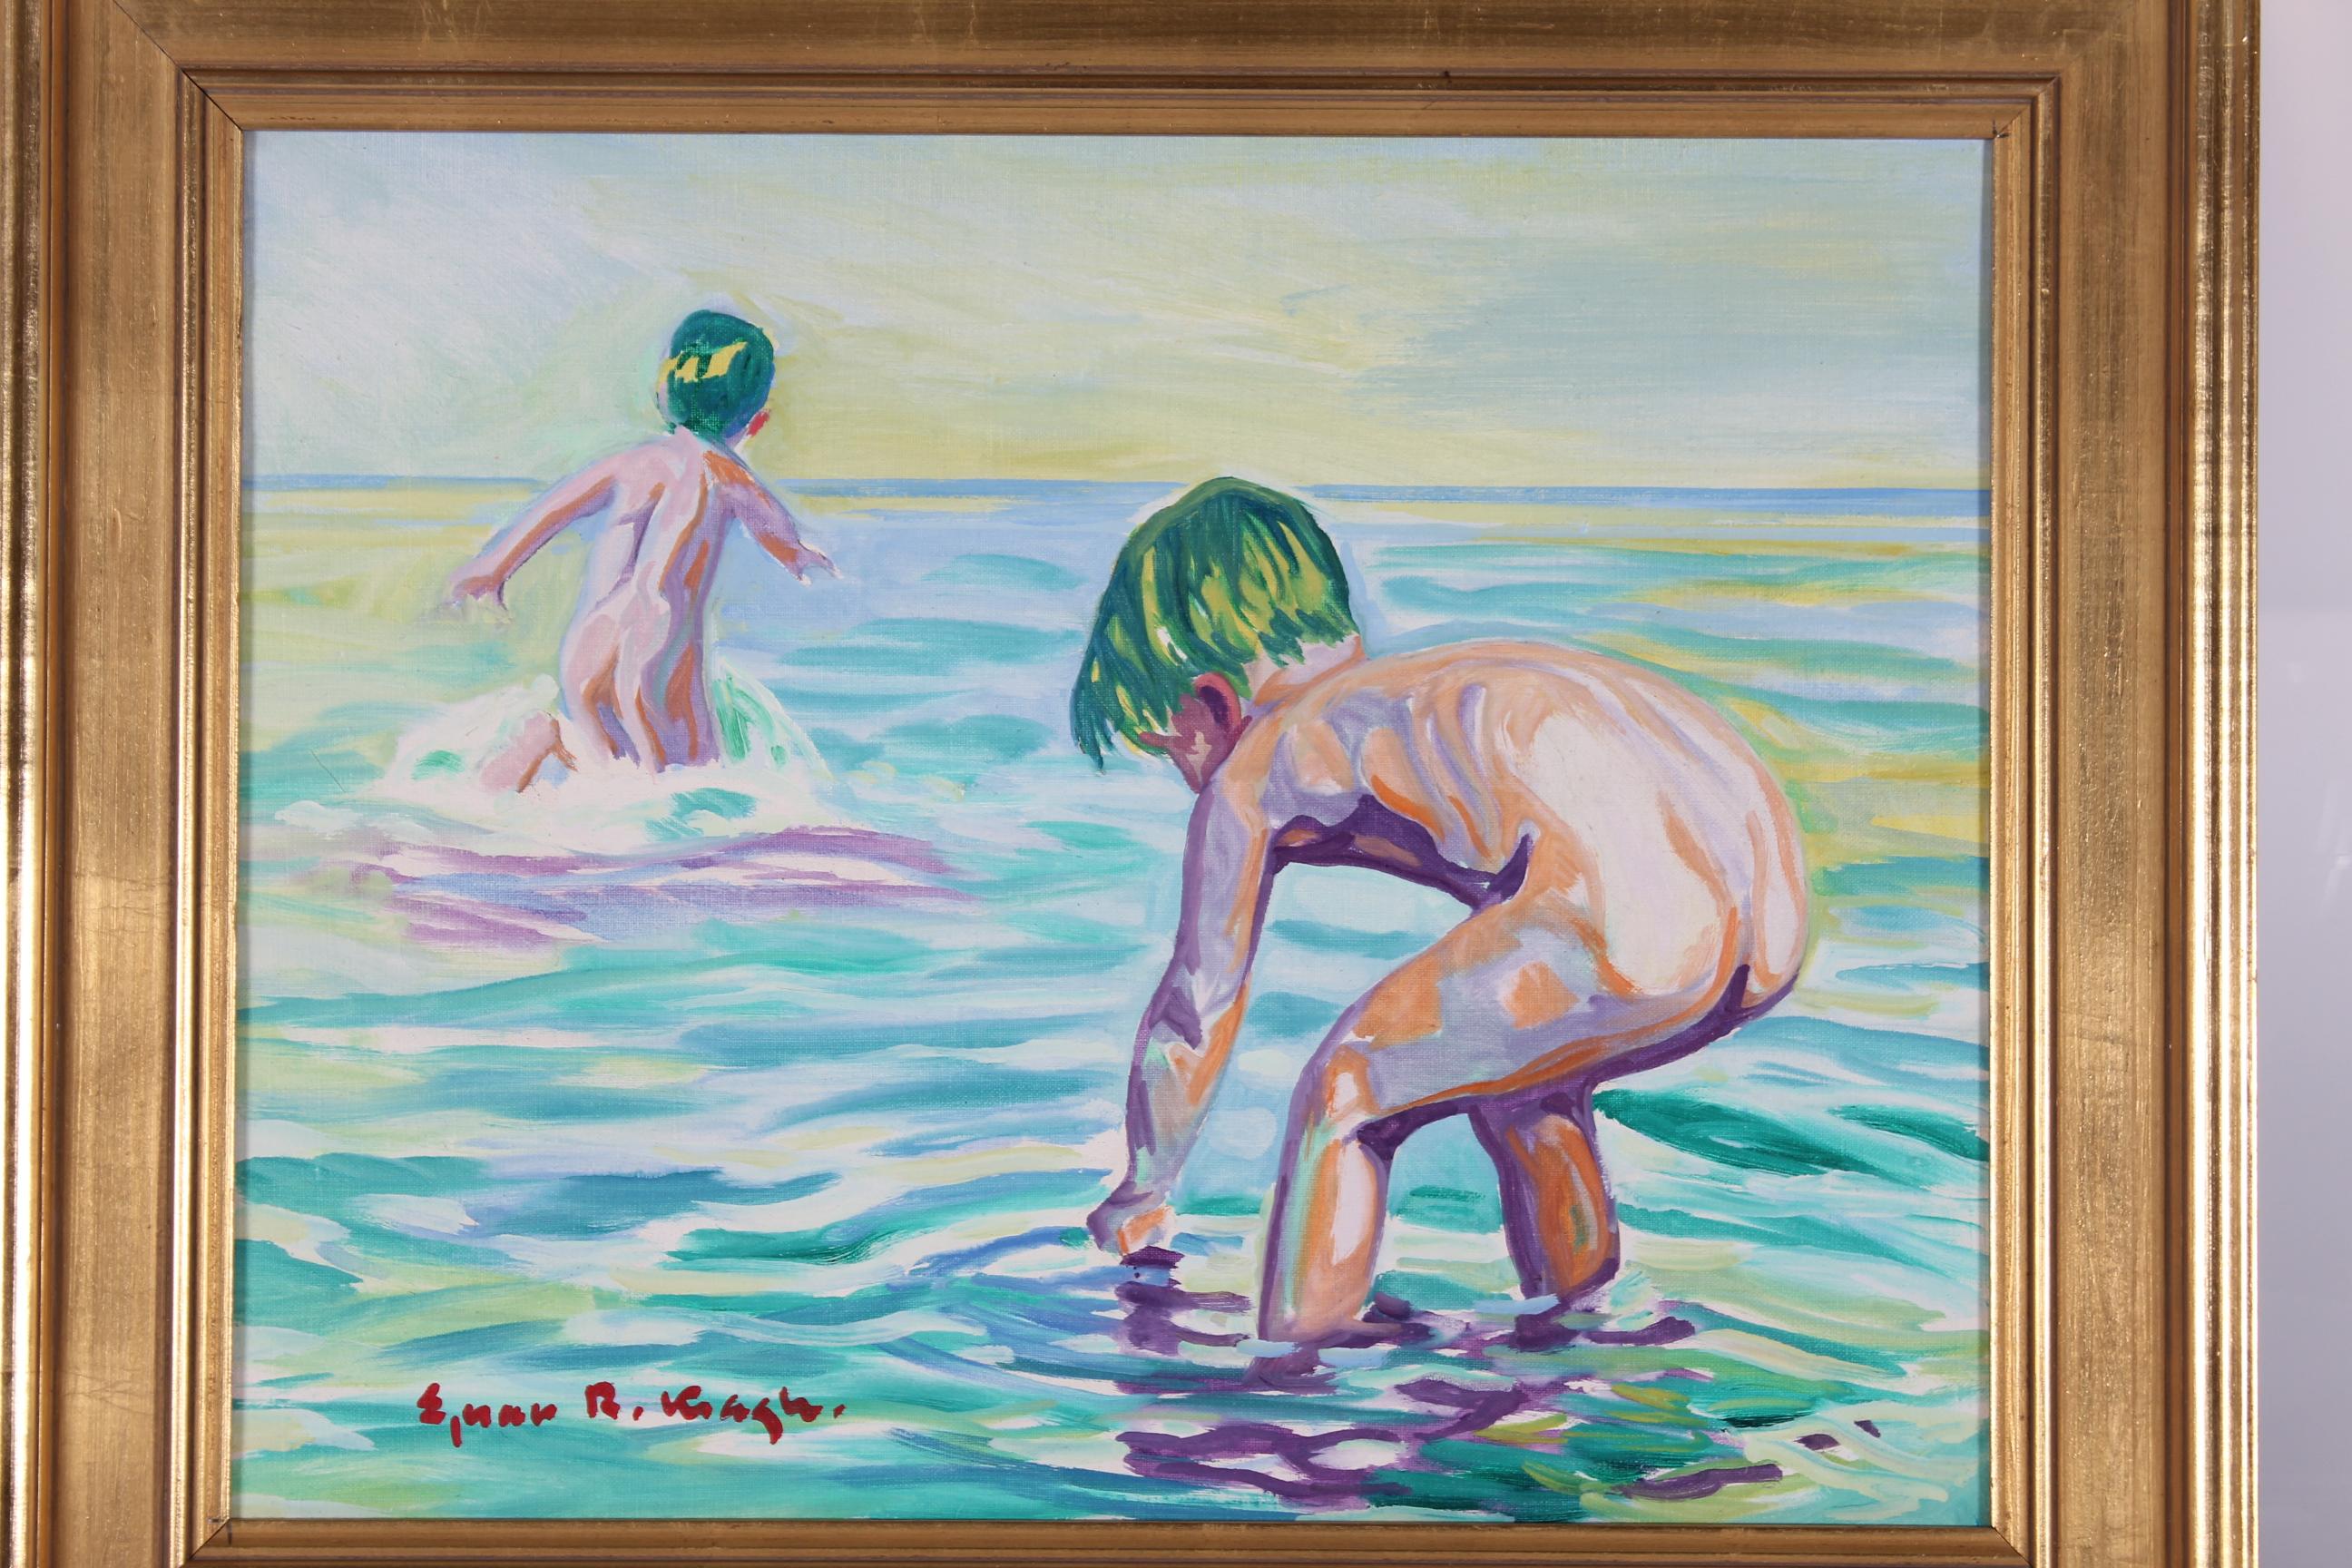 L'artiste danois Ejnar R. Kragh (1903-1981) est né à Nykøbing Falster.
Kragh a été l'élève de Carl Schwenn et de Svend Lindstrøm.
et étudiant à l'Académie des Beaux-Arts de Copenhague, 1928-1932.

Peinture à l'huile post impressionniste